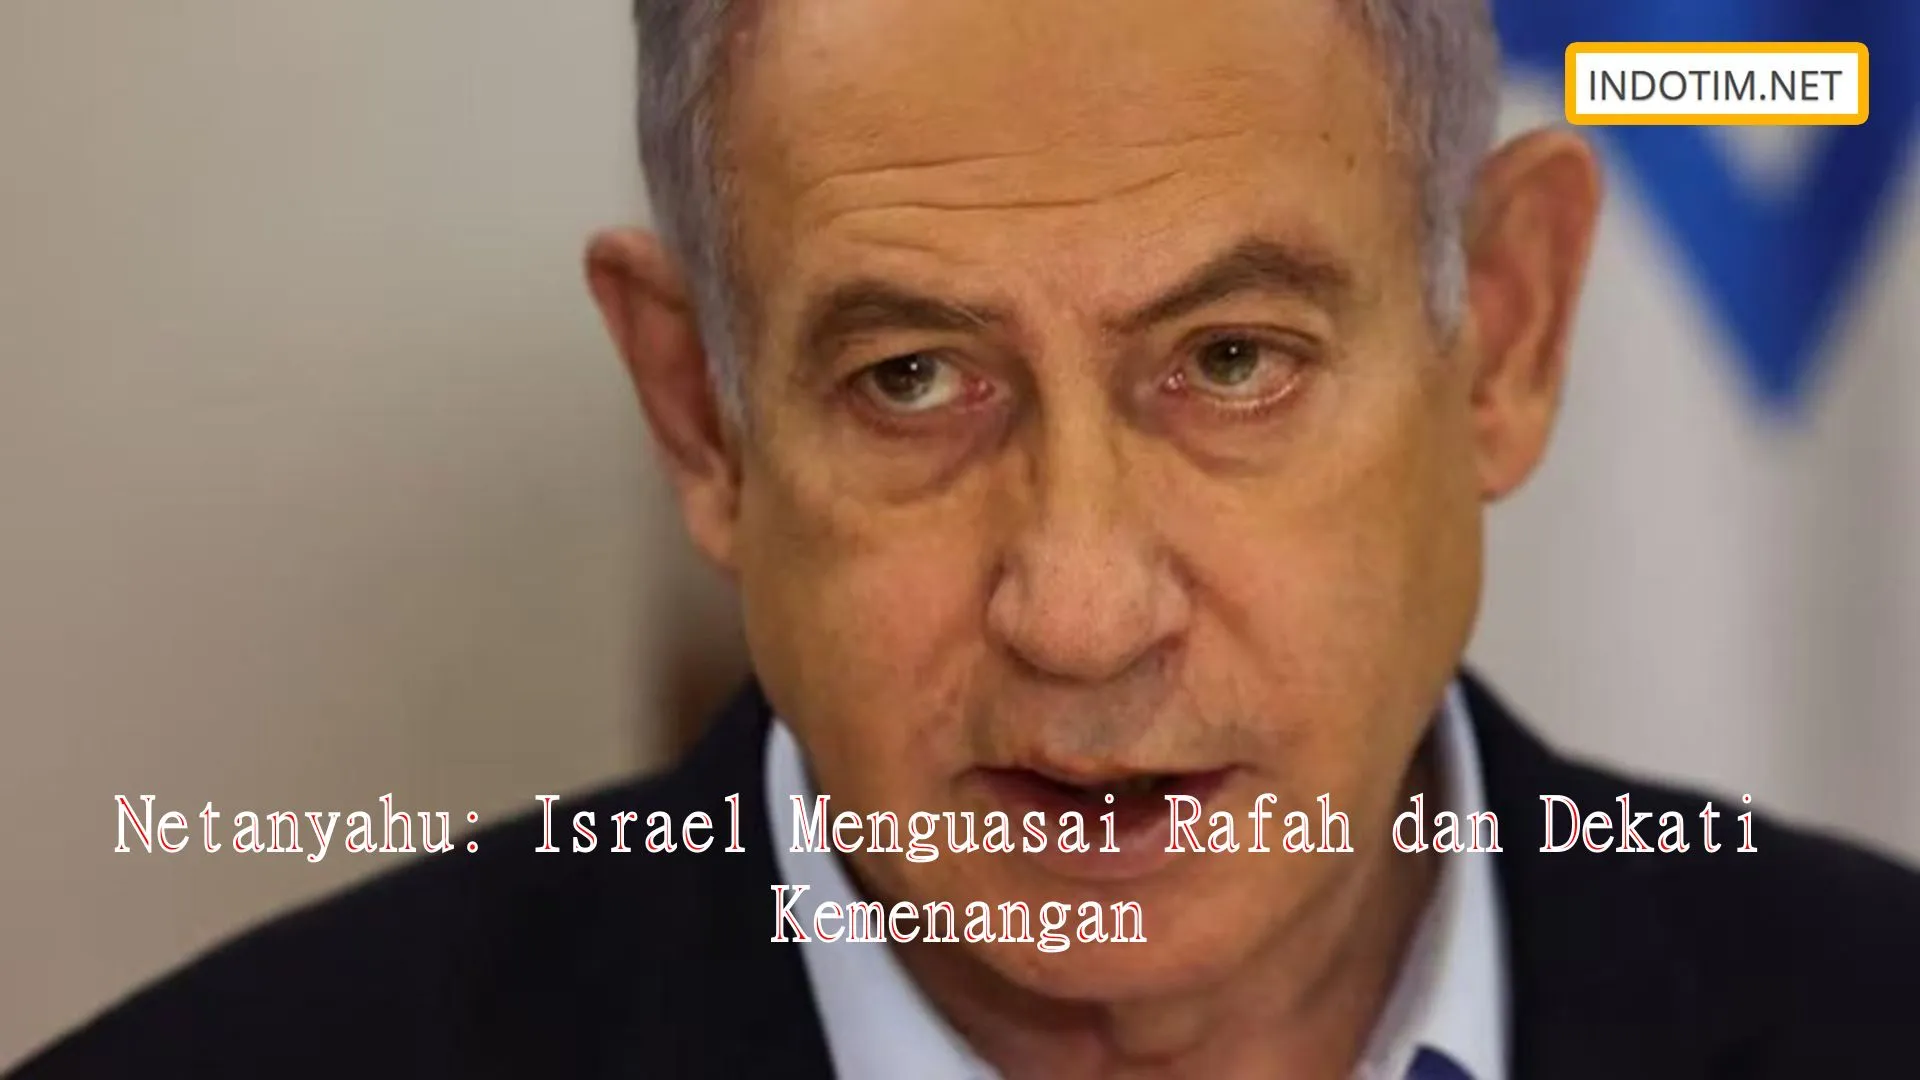 Netanyahu: Israel Menguasai Rafah dan Dekati Kemenangan